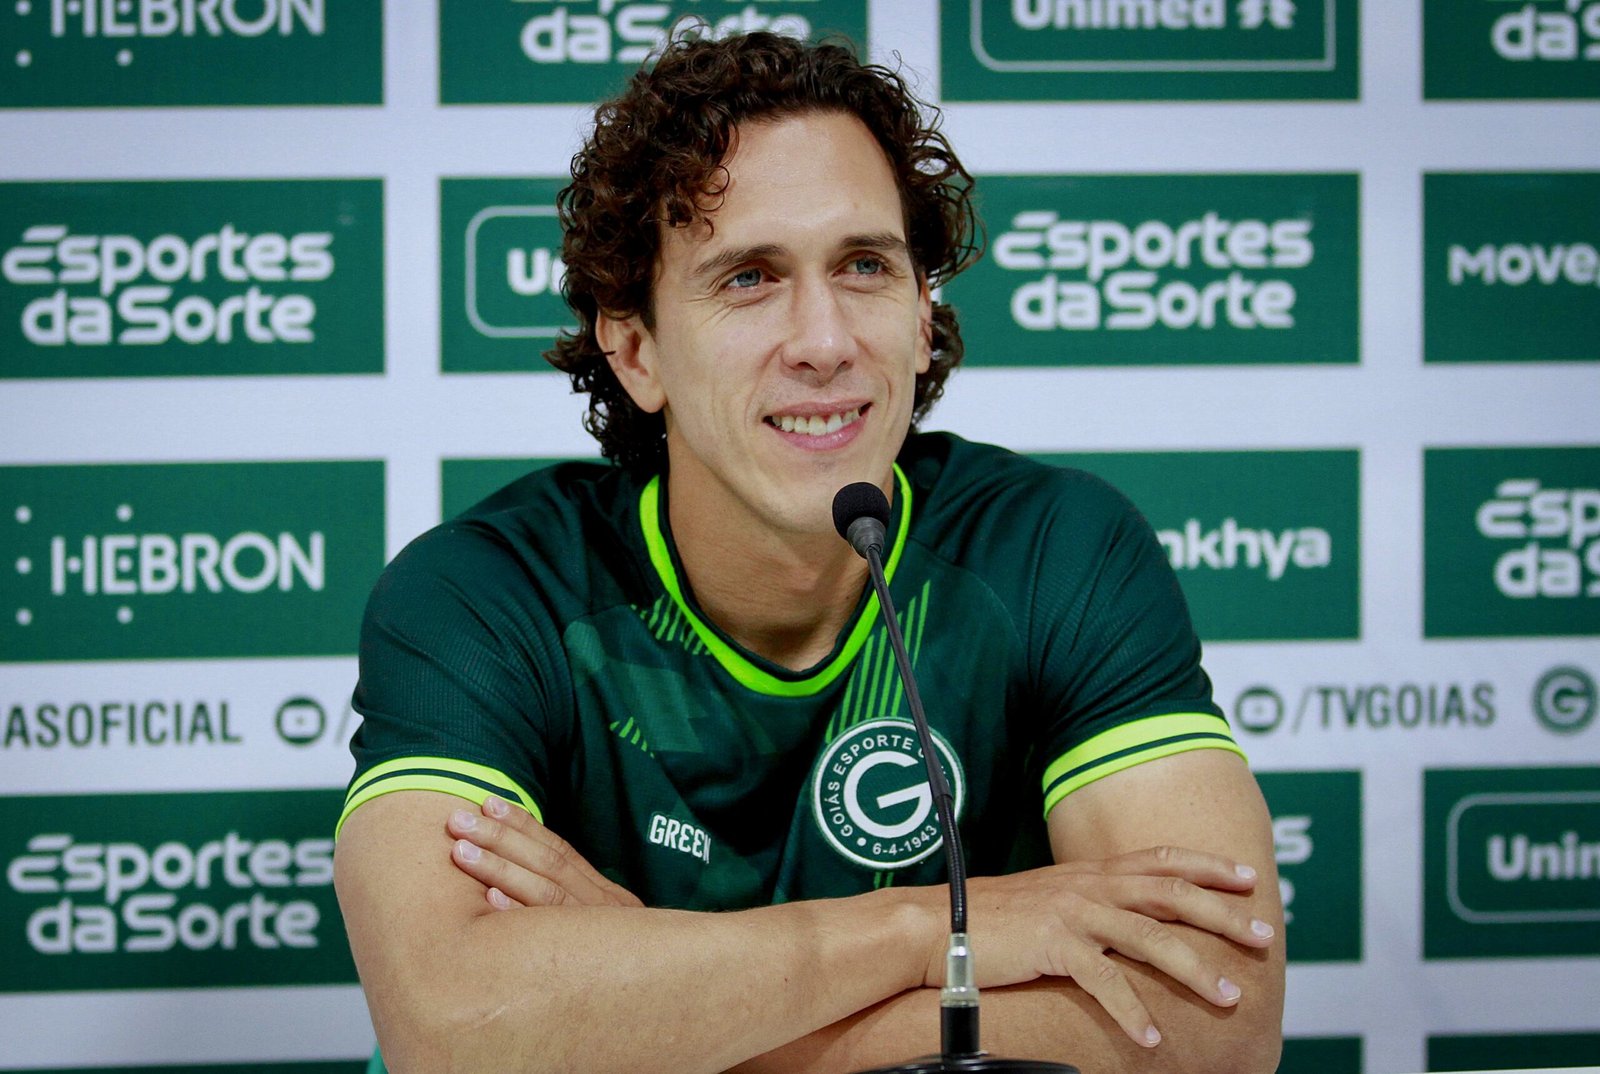 Nicolas analisa equipe do Atlético-GO e revela postura que Goiás precisa ter para vencer em casa: “fazer um jogo consistente e sem erros”